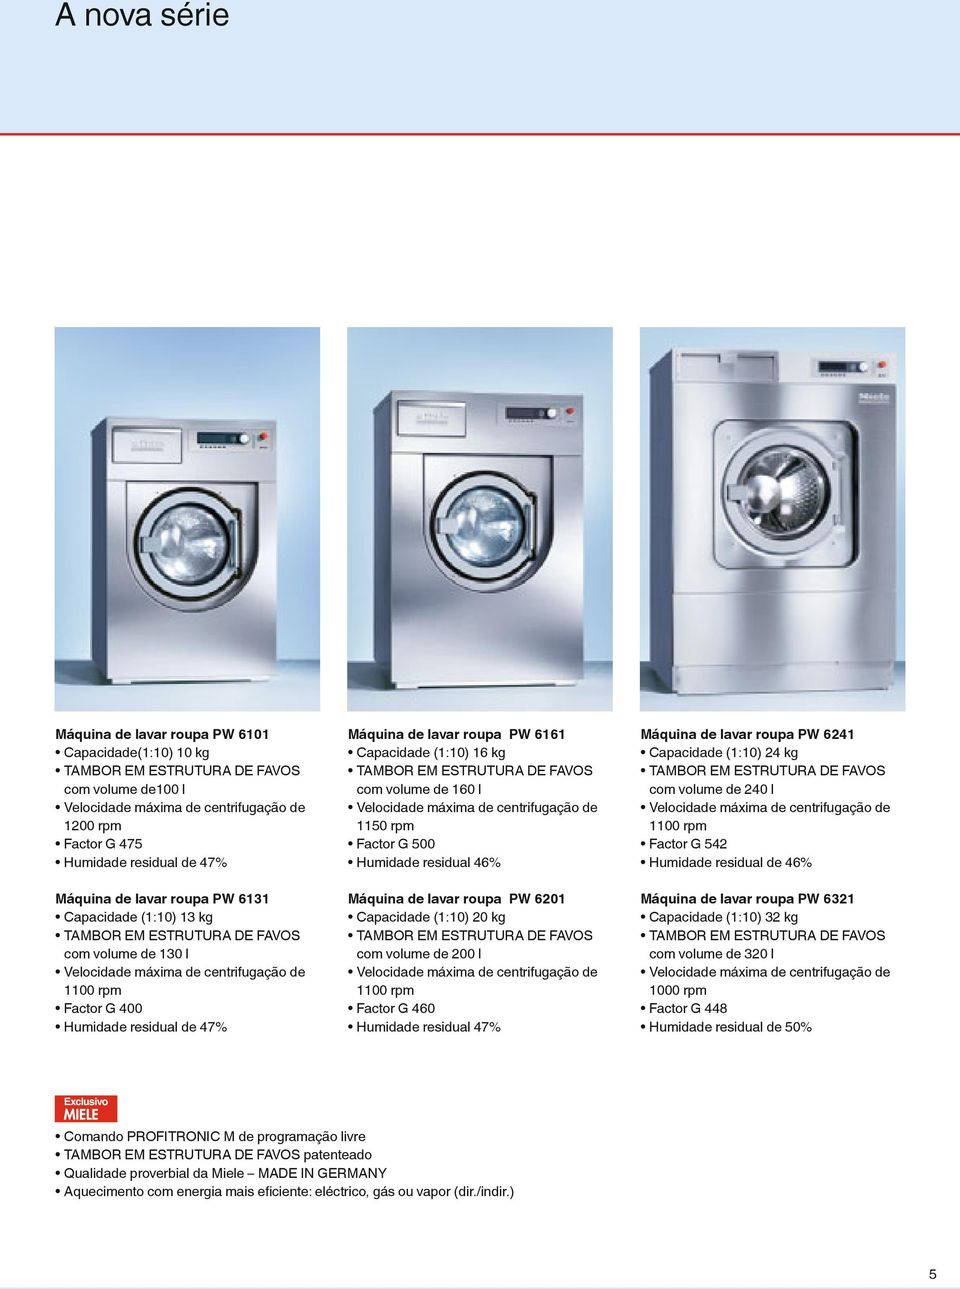 lavar roupa PW 6161 Capacidade (1:10) 16 kg TAMBOR EM ESTRUTURA DE FAVOS com volume de 160 l Velocidade máxima de centrifugação de 1150 rpm Factor G 500 Humidade residual 46% Máquina de lavar roupa